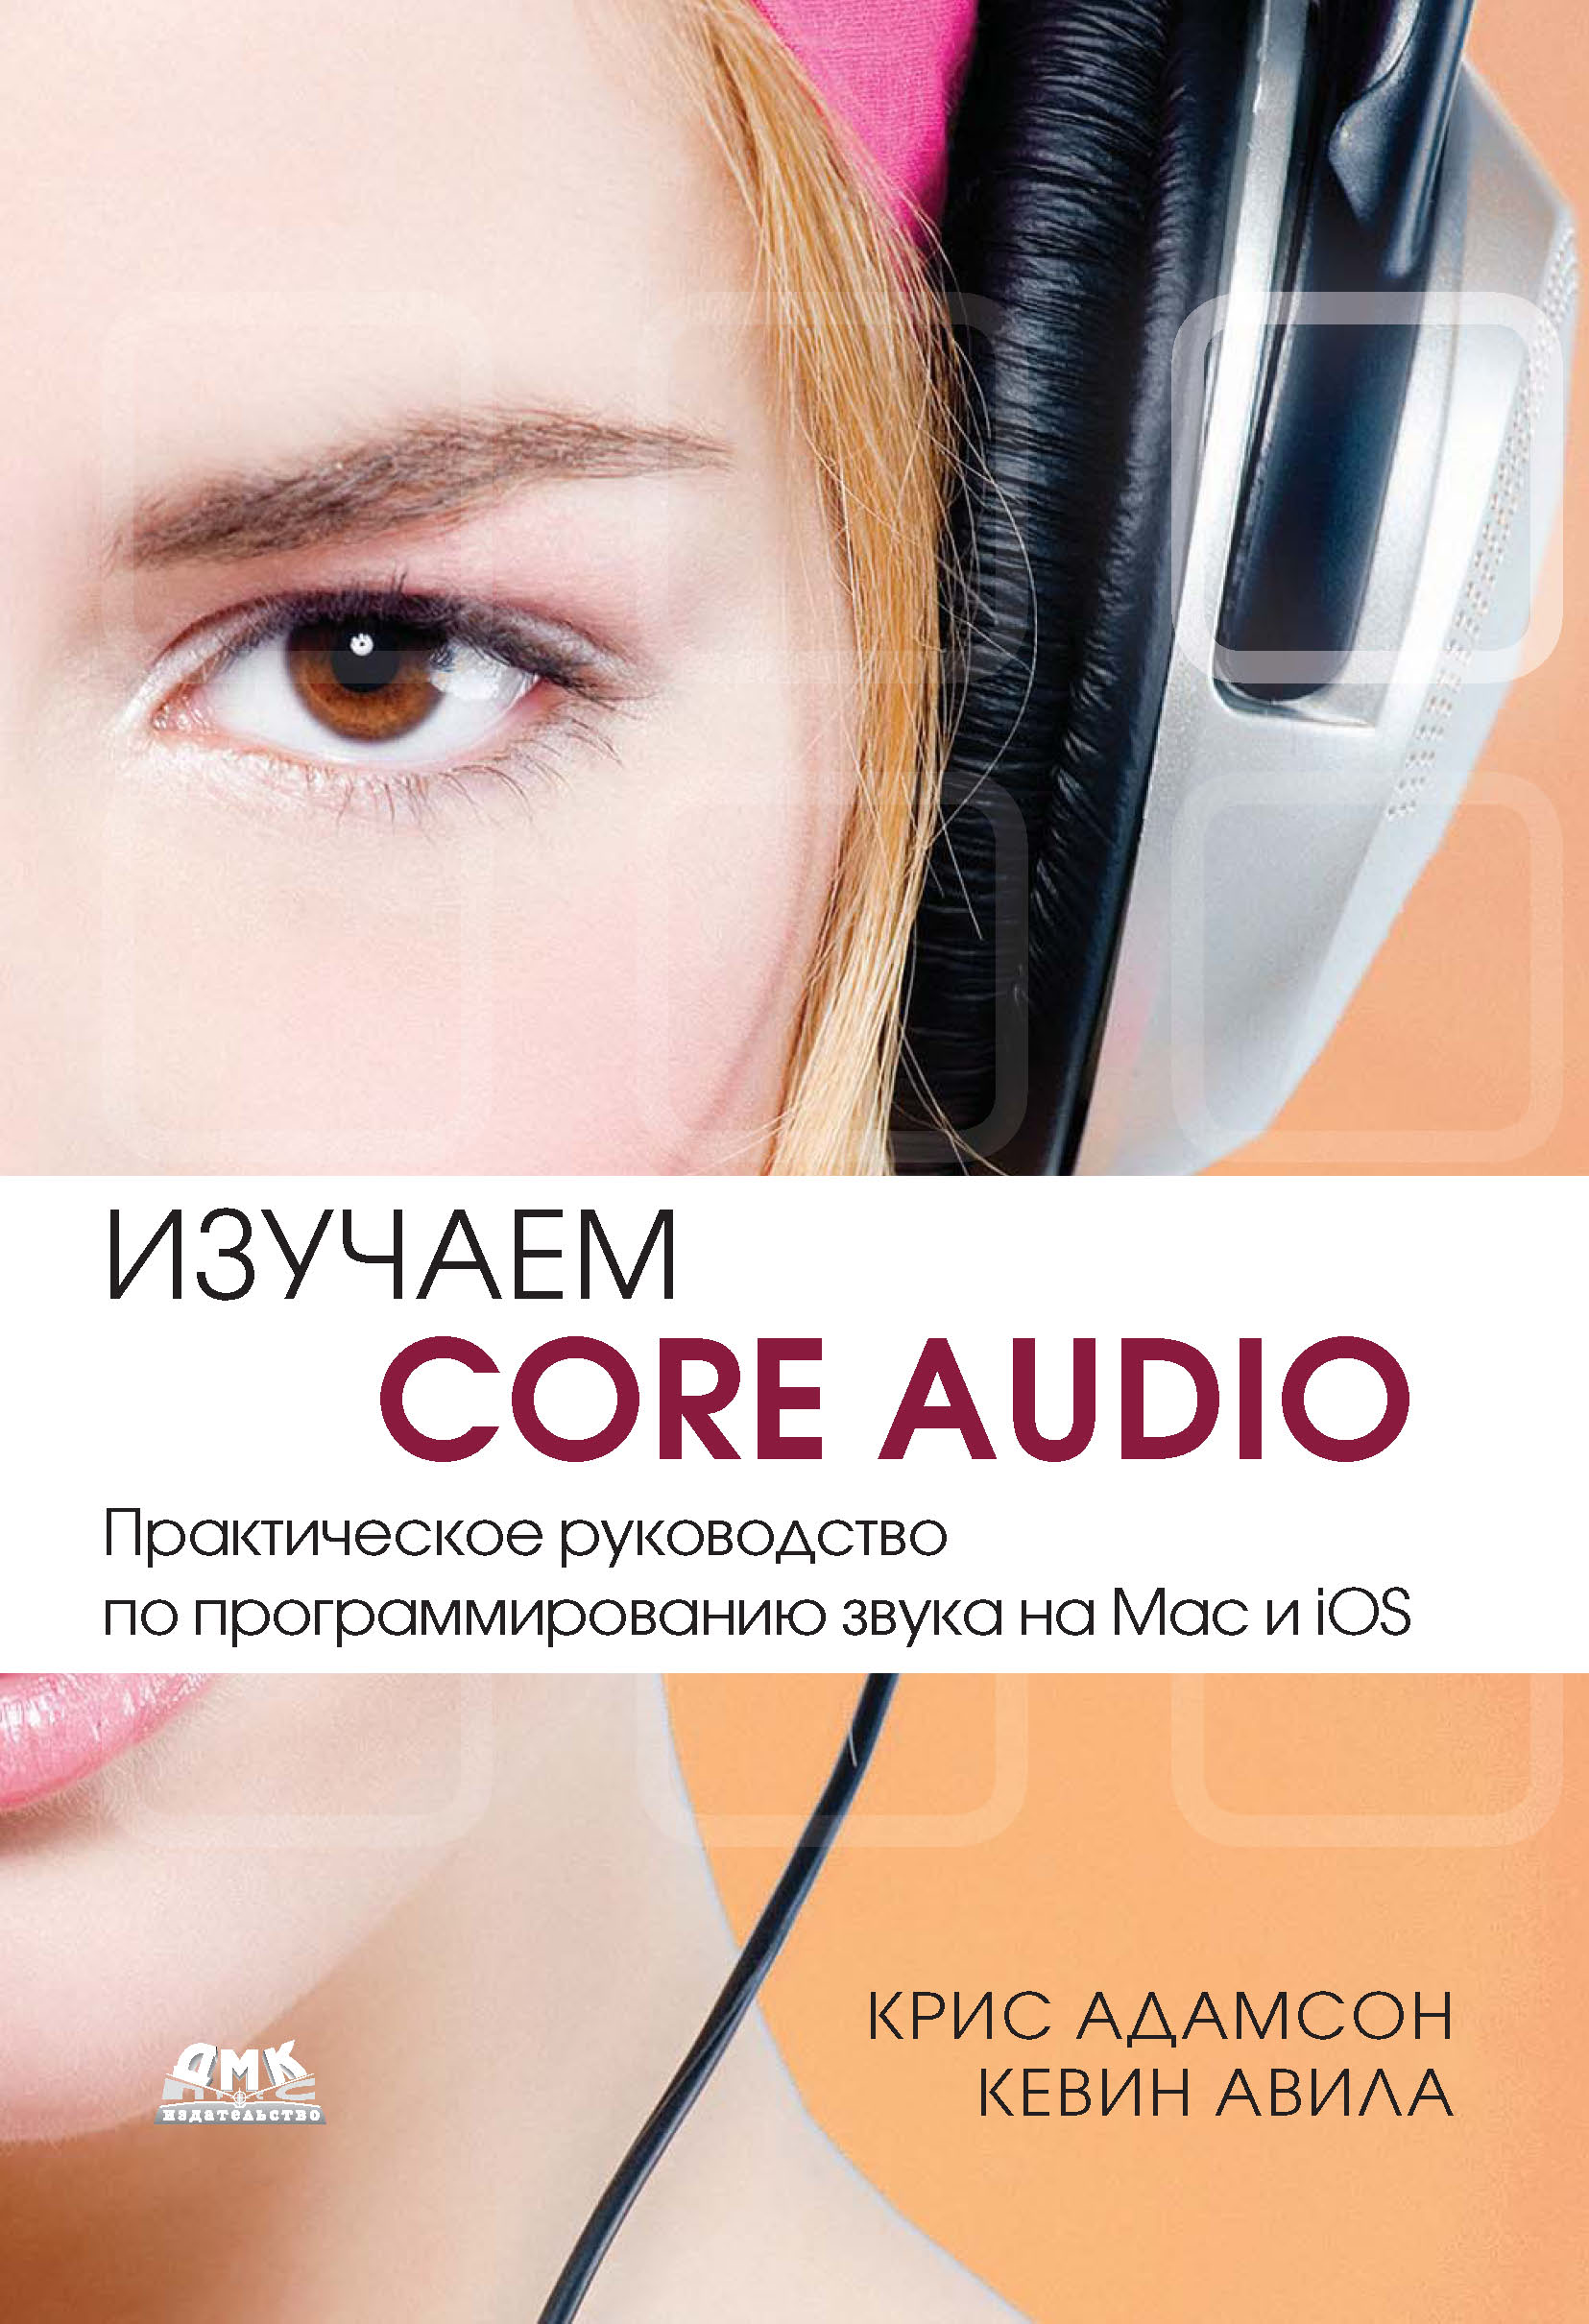 Книга  Изучаем Core Audio. Практическое руководство по программированию звука на Mac и iOS созданная Кевин Авила, Крис Адамсон может относится к жанру зарубежная компьютерная литература, зарубежная справочная литература, программирование, программы, руководства. Стоимость электронной книги Изучаем Core Audio. Практическое руководство по программированию звука на Mac и iOS с идентификатором 6114456 составляет 519.00 руб.